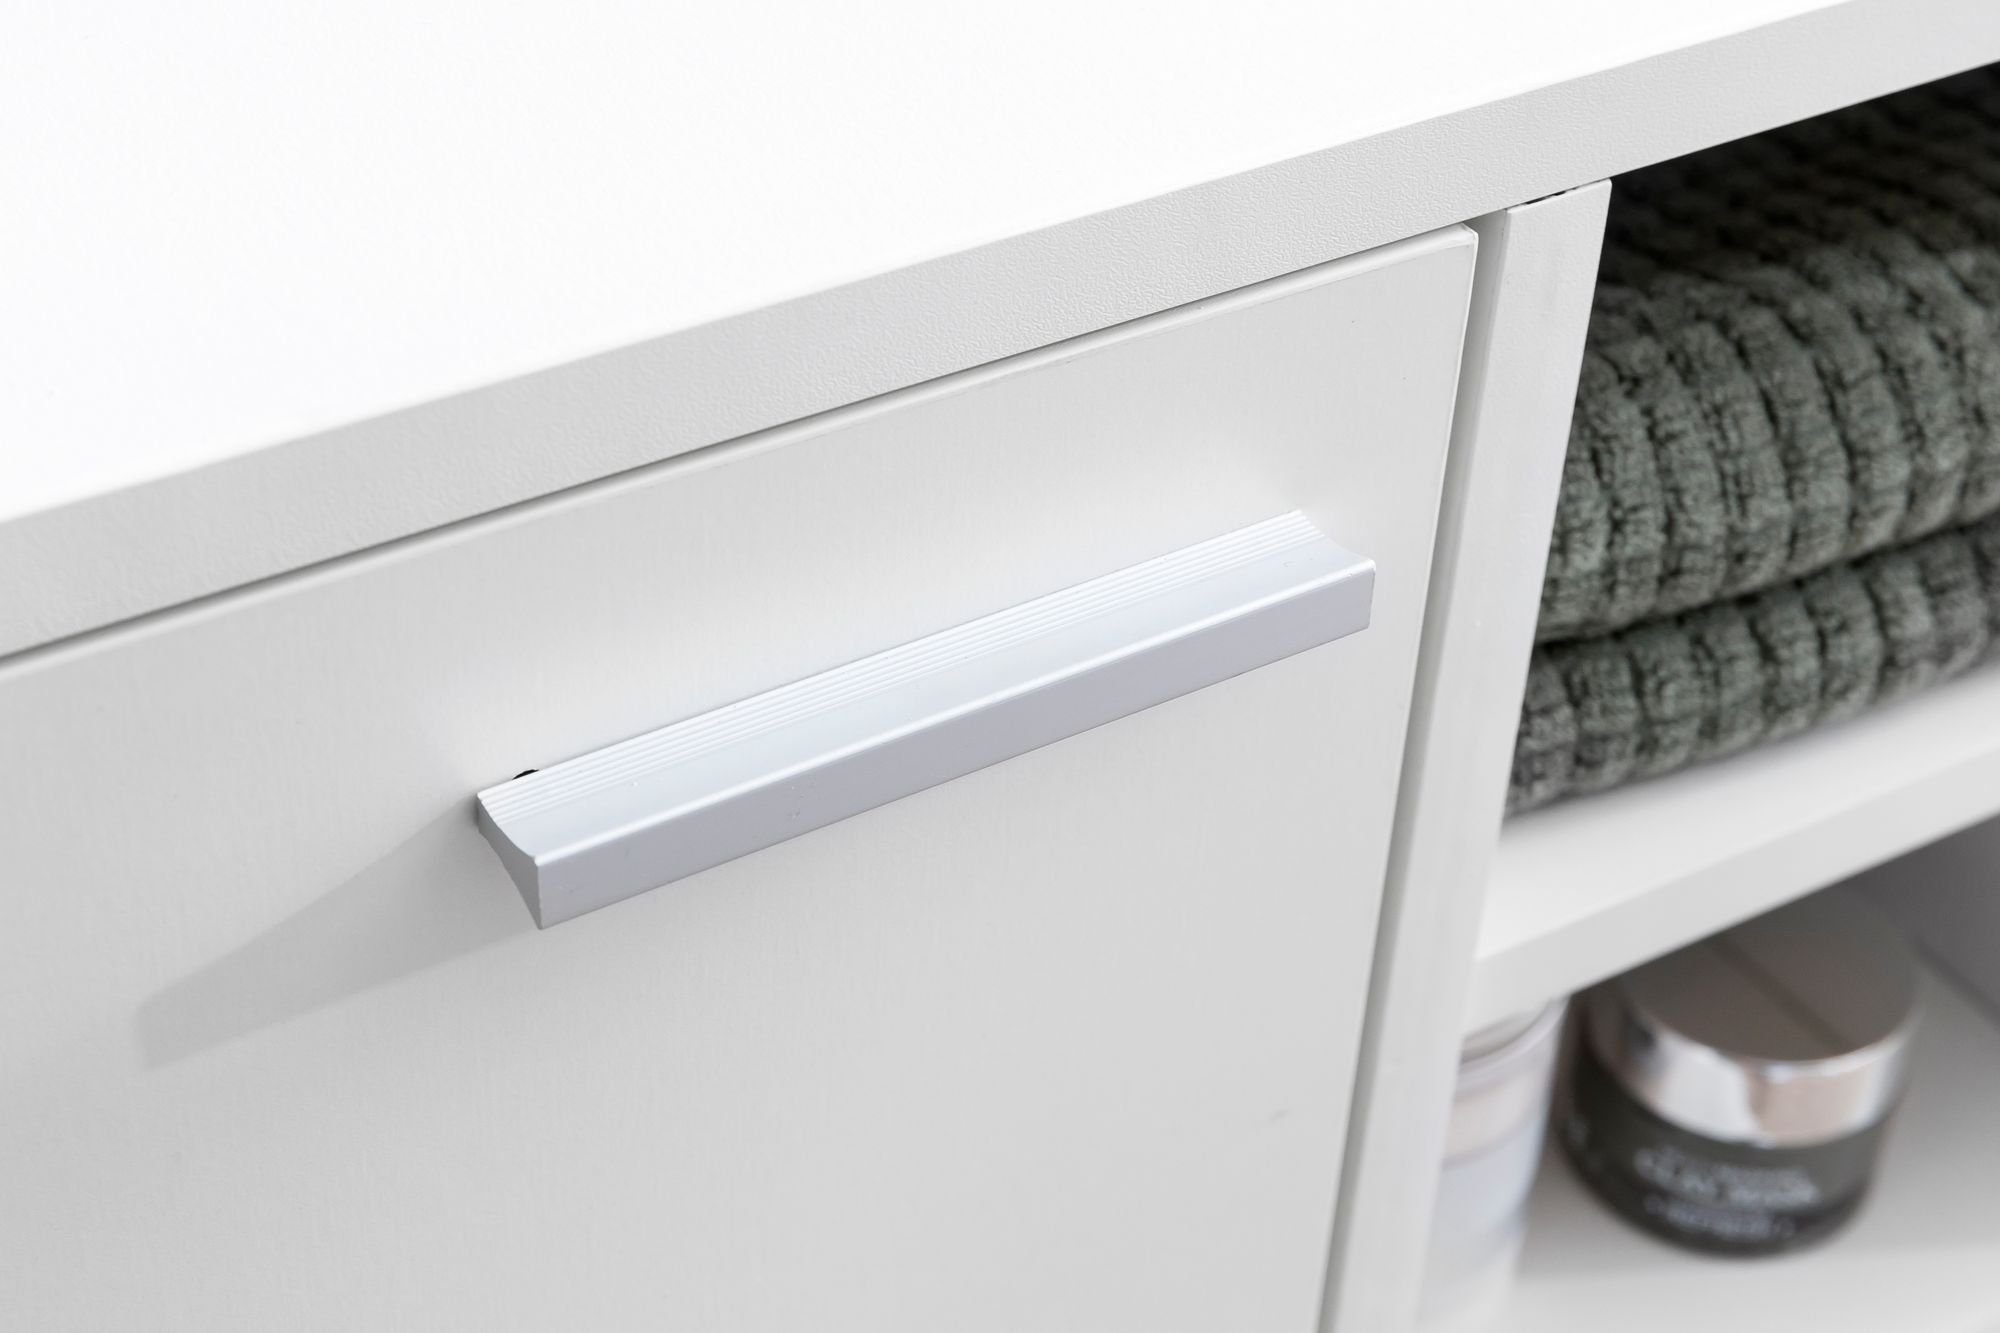 FINEBUY Waschbeckenunterschrank Regal Tür, Waschtischunterschrank FB51390 und Badmöbel mit Unterschrank) Tür, (60x55x32cm Weiß mit Badschrank